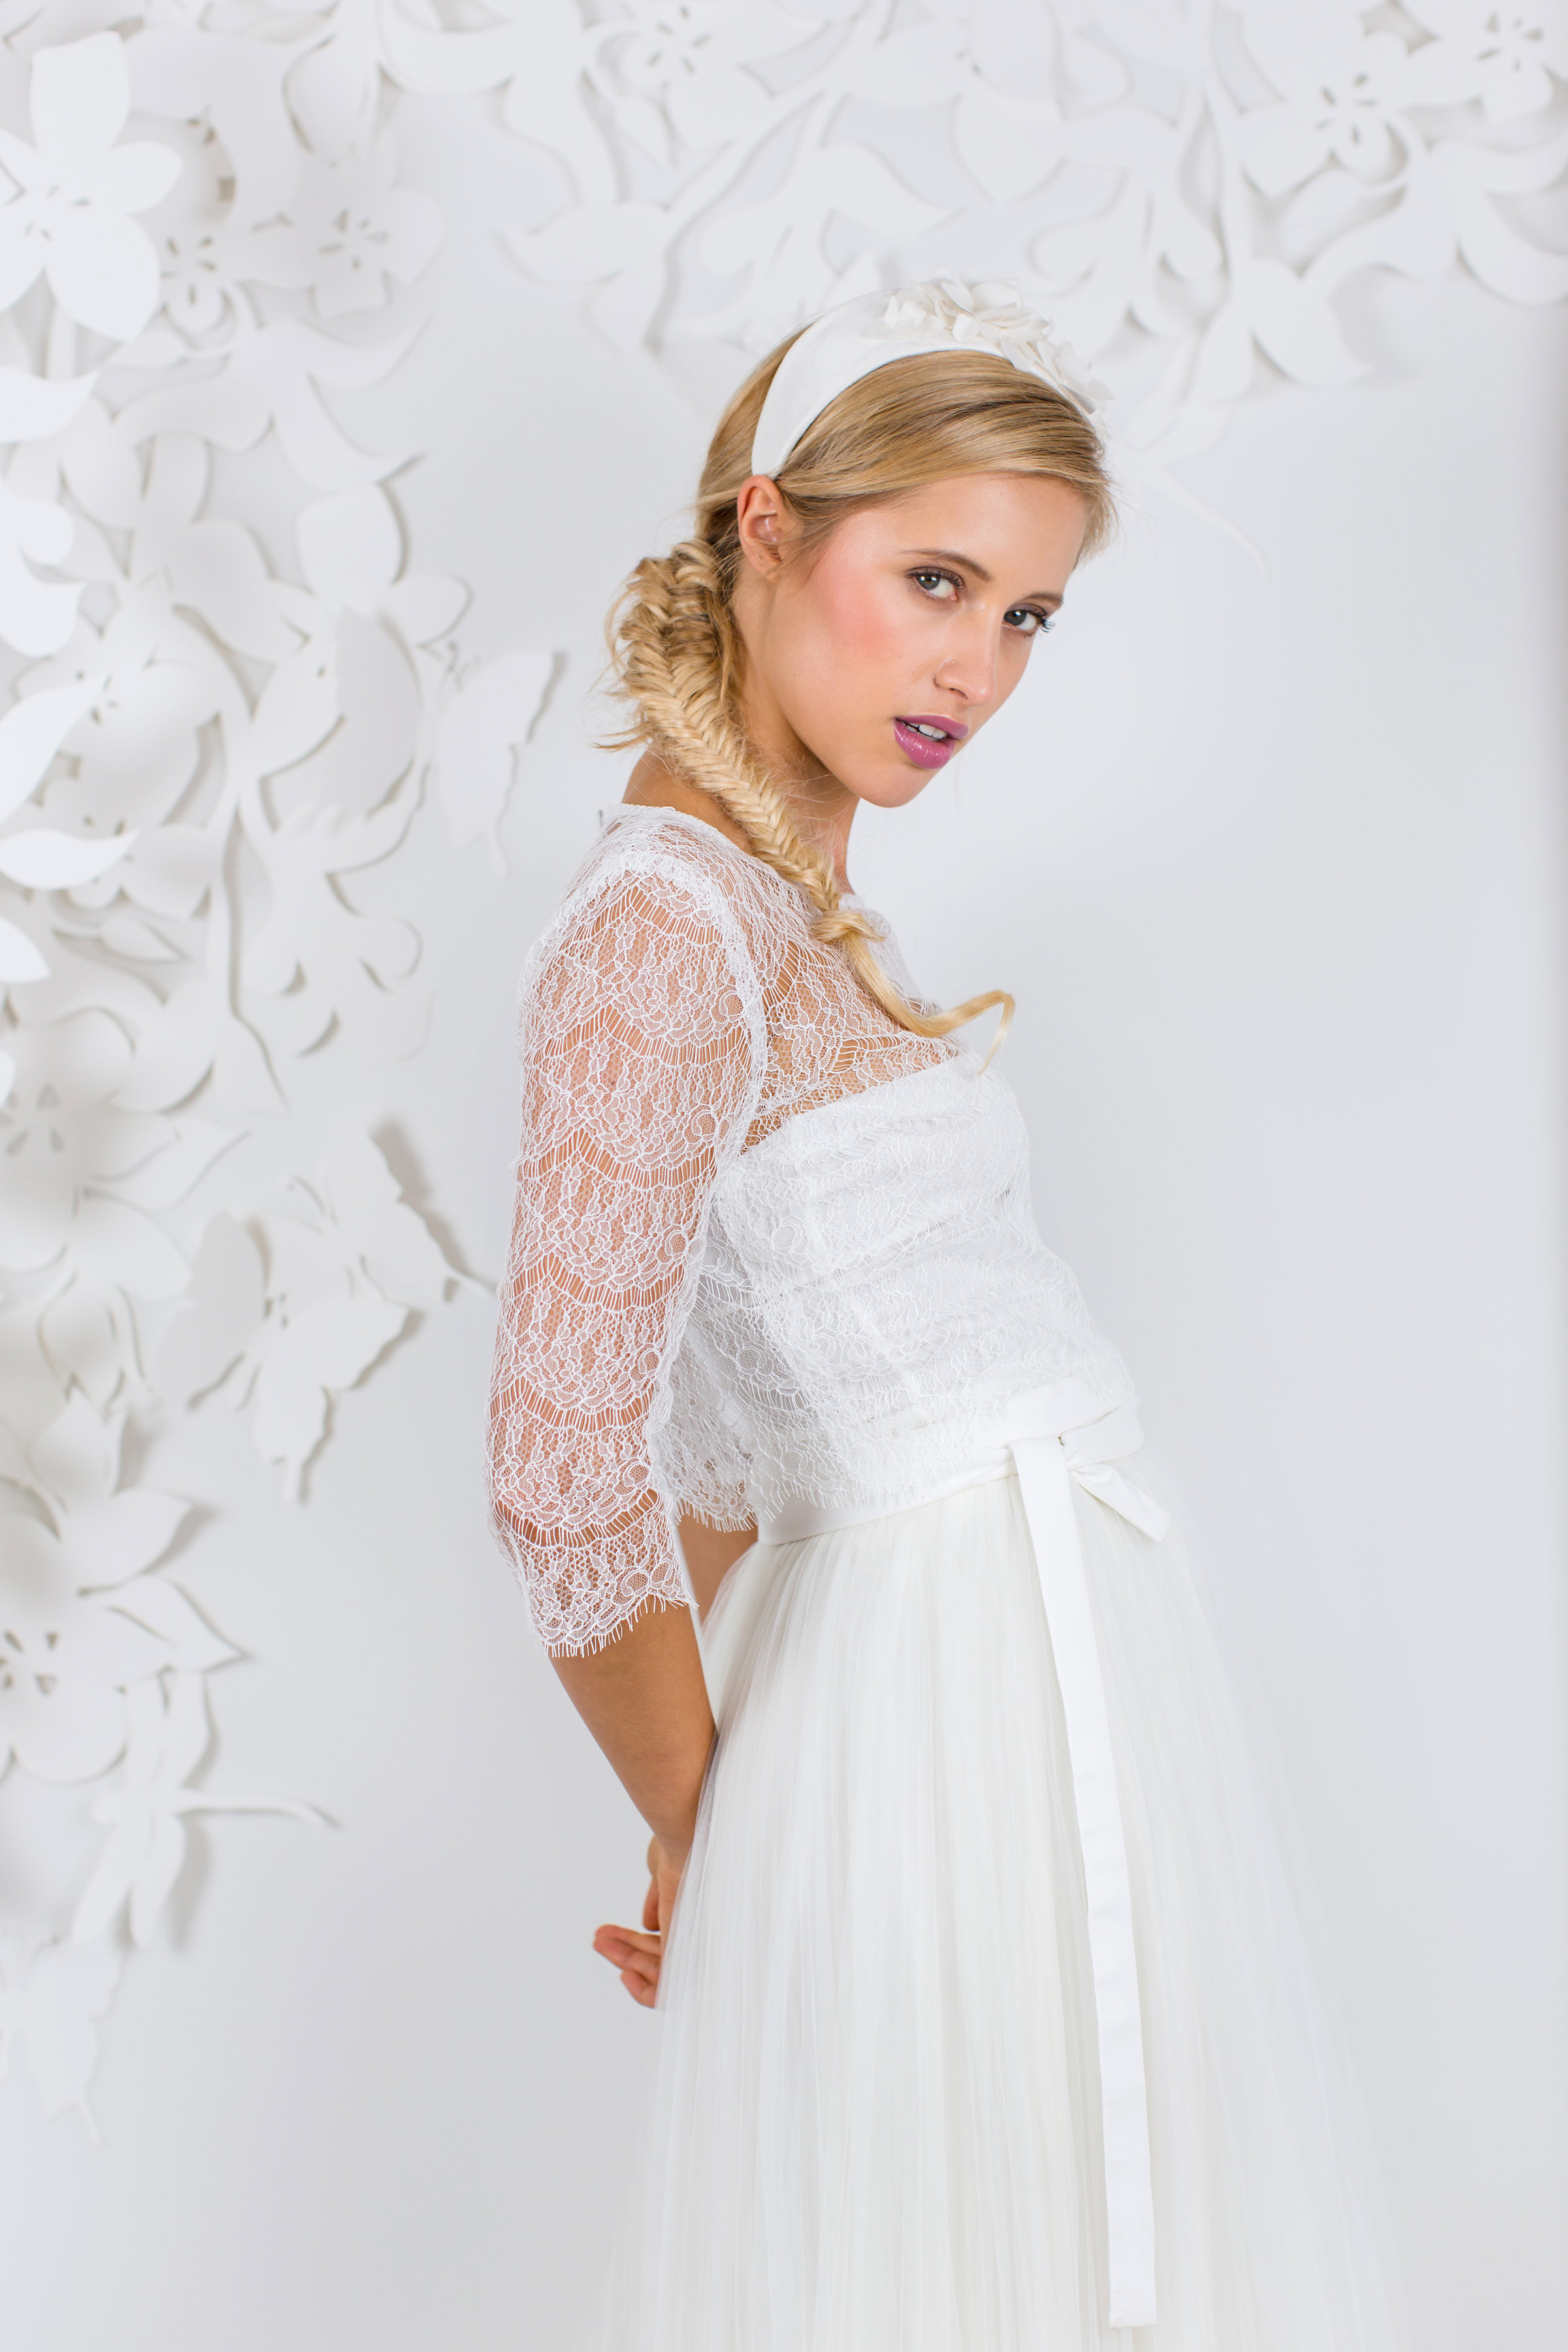 Standesamt Hochzeitskleid
 Brautkleid Standesamt Die schönsten Kleider für